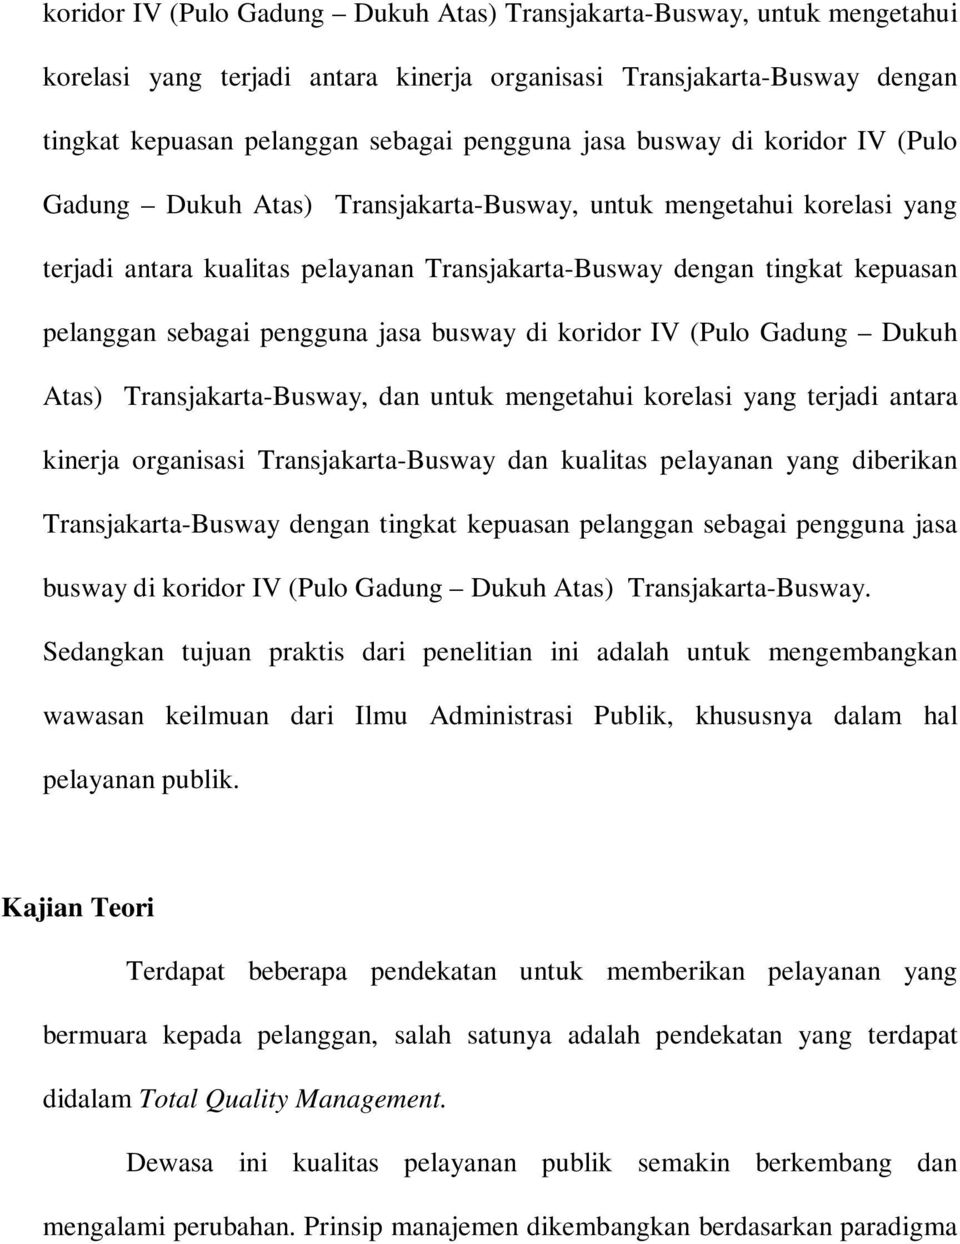 pengguna jasa busway di koridor IV (Pulo Gadung Dukuh Atas) Transjakarta-Busway, dan untuk mengetahui korelasi yang terjadi antara kinerja organisasi Transjakarta-Busway dan kualitas pelayanan yang